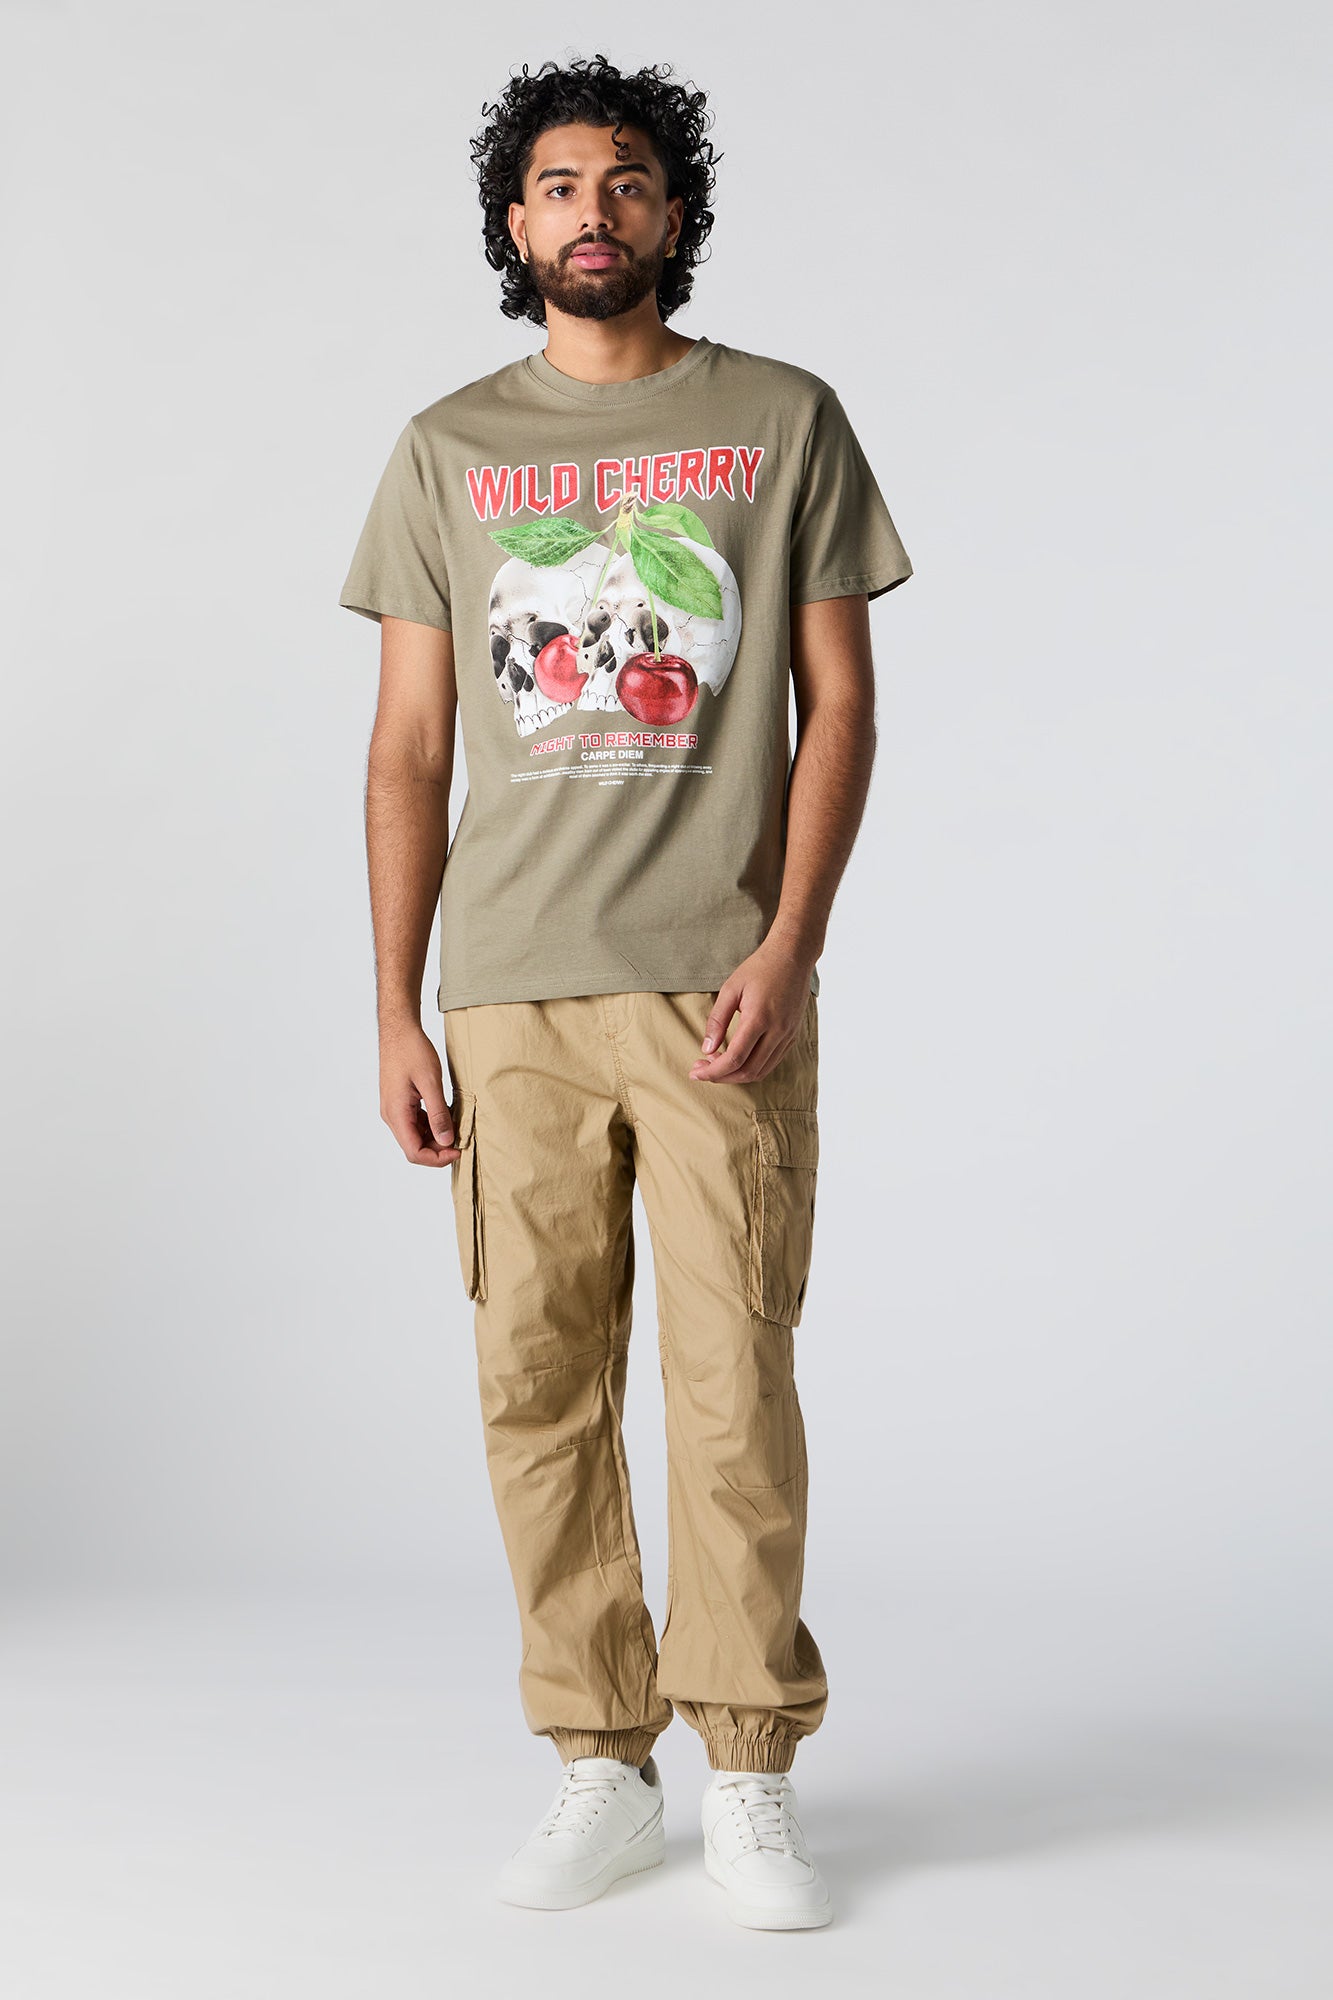 Wild Cherry Graphic T-Shirt